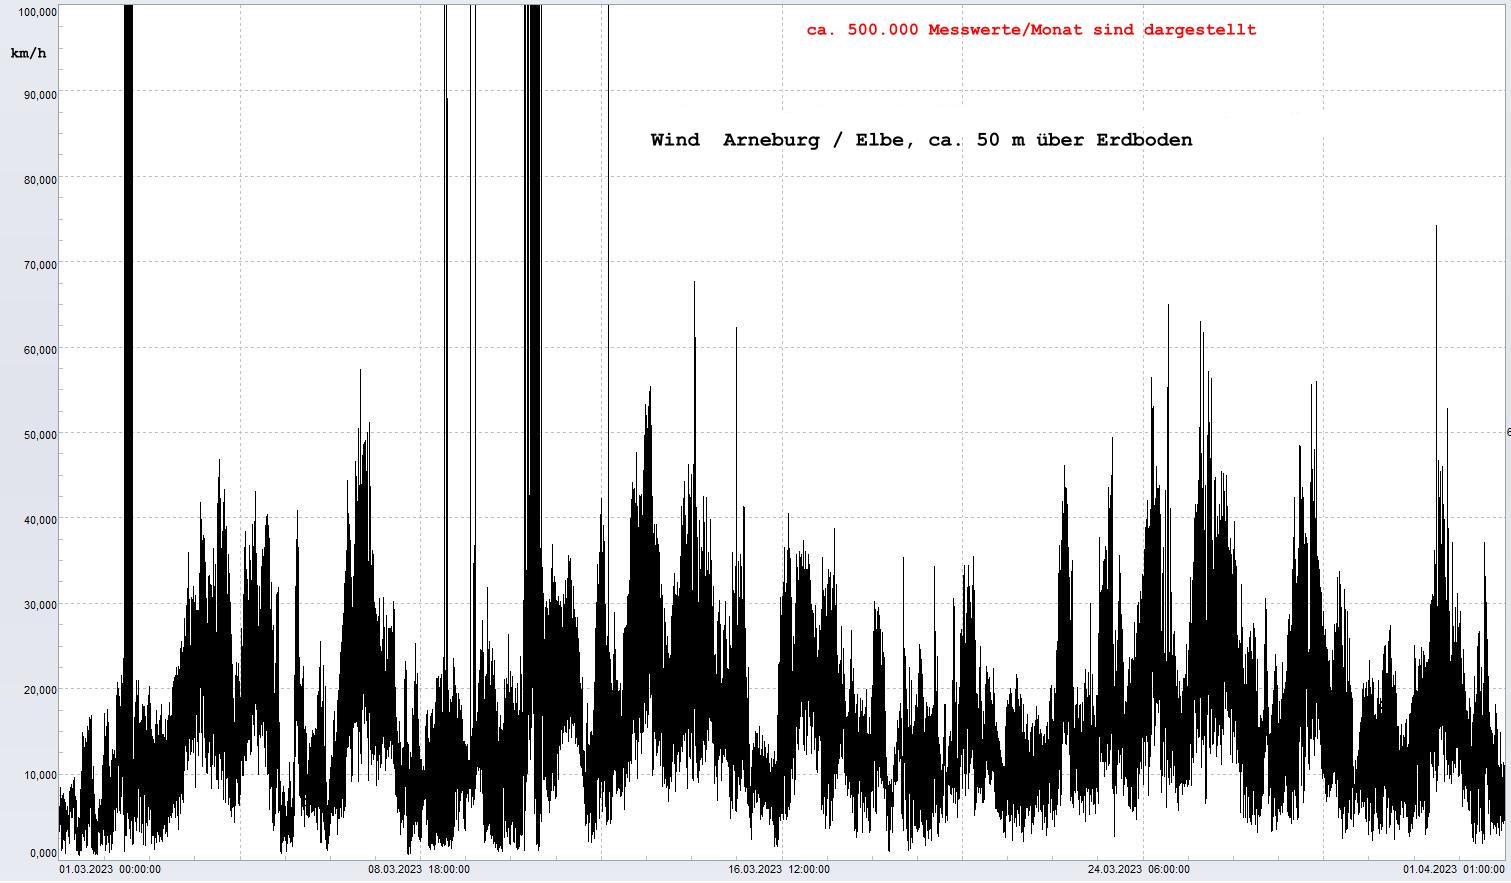 Arneburg Winddaten Monat Mrz 2023, 
  Sensor auf Gebude, ca. 50 m ber Erdboden, 5s-Aufzeichnung